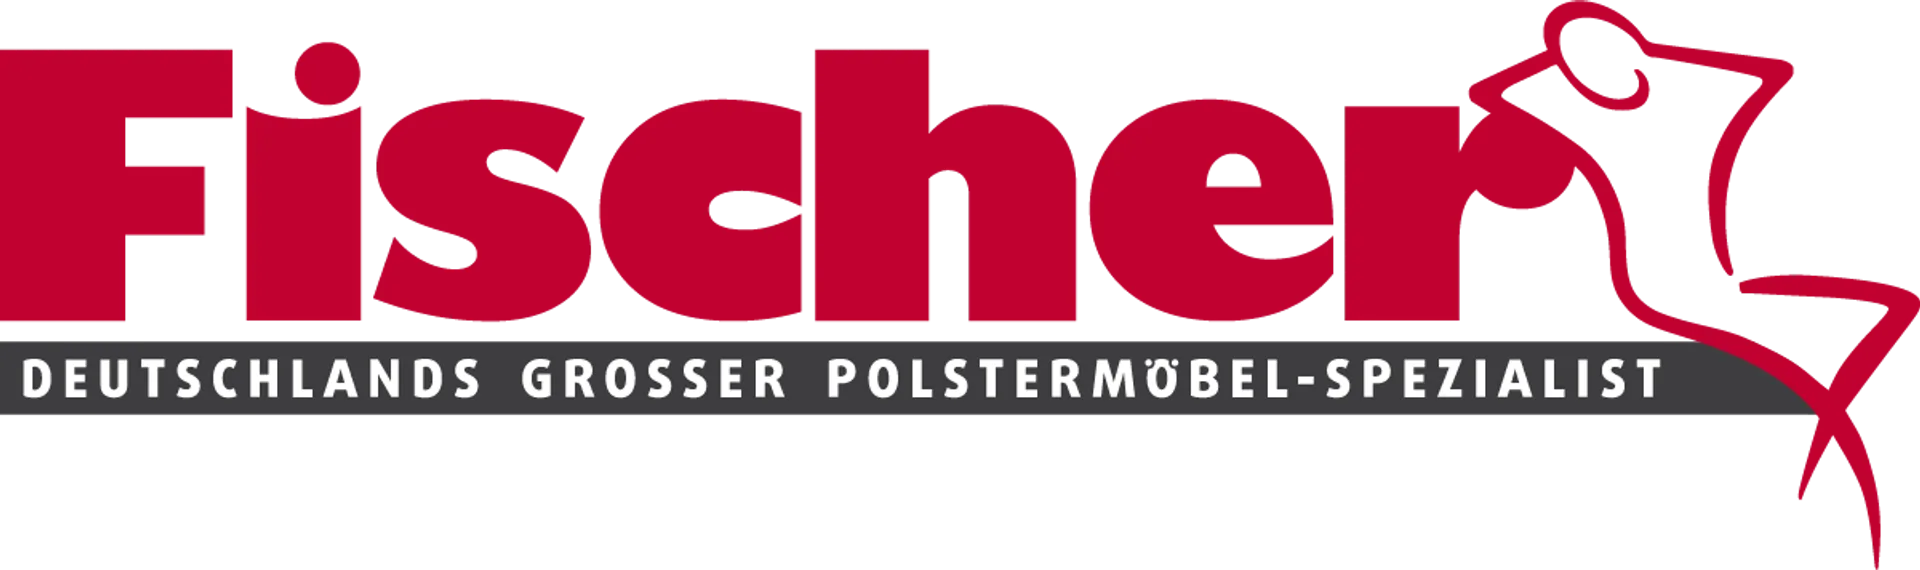 POLSTERMÖBEL FISCHER logo die aktuell Flugblatt